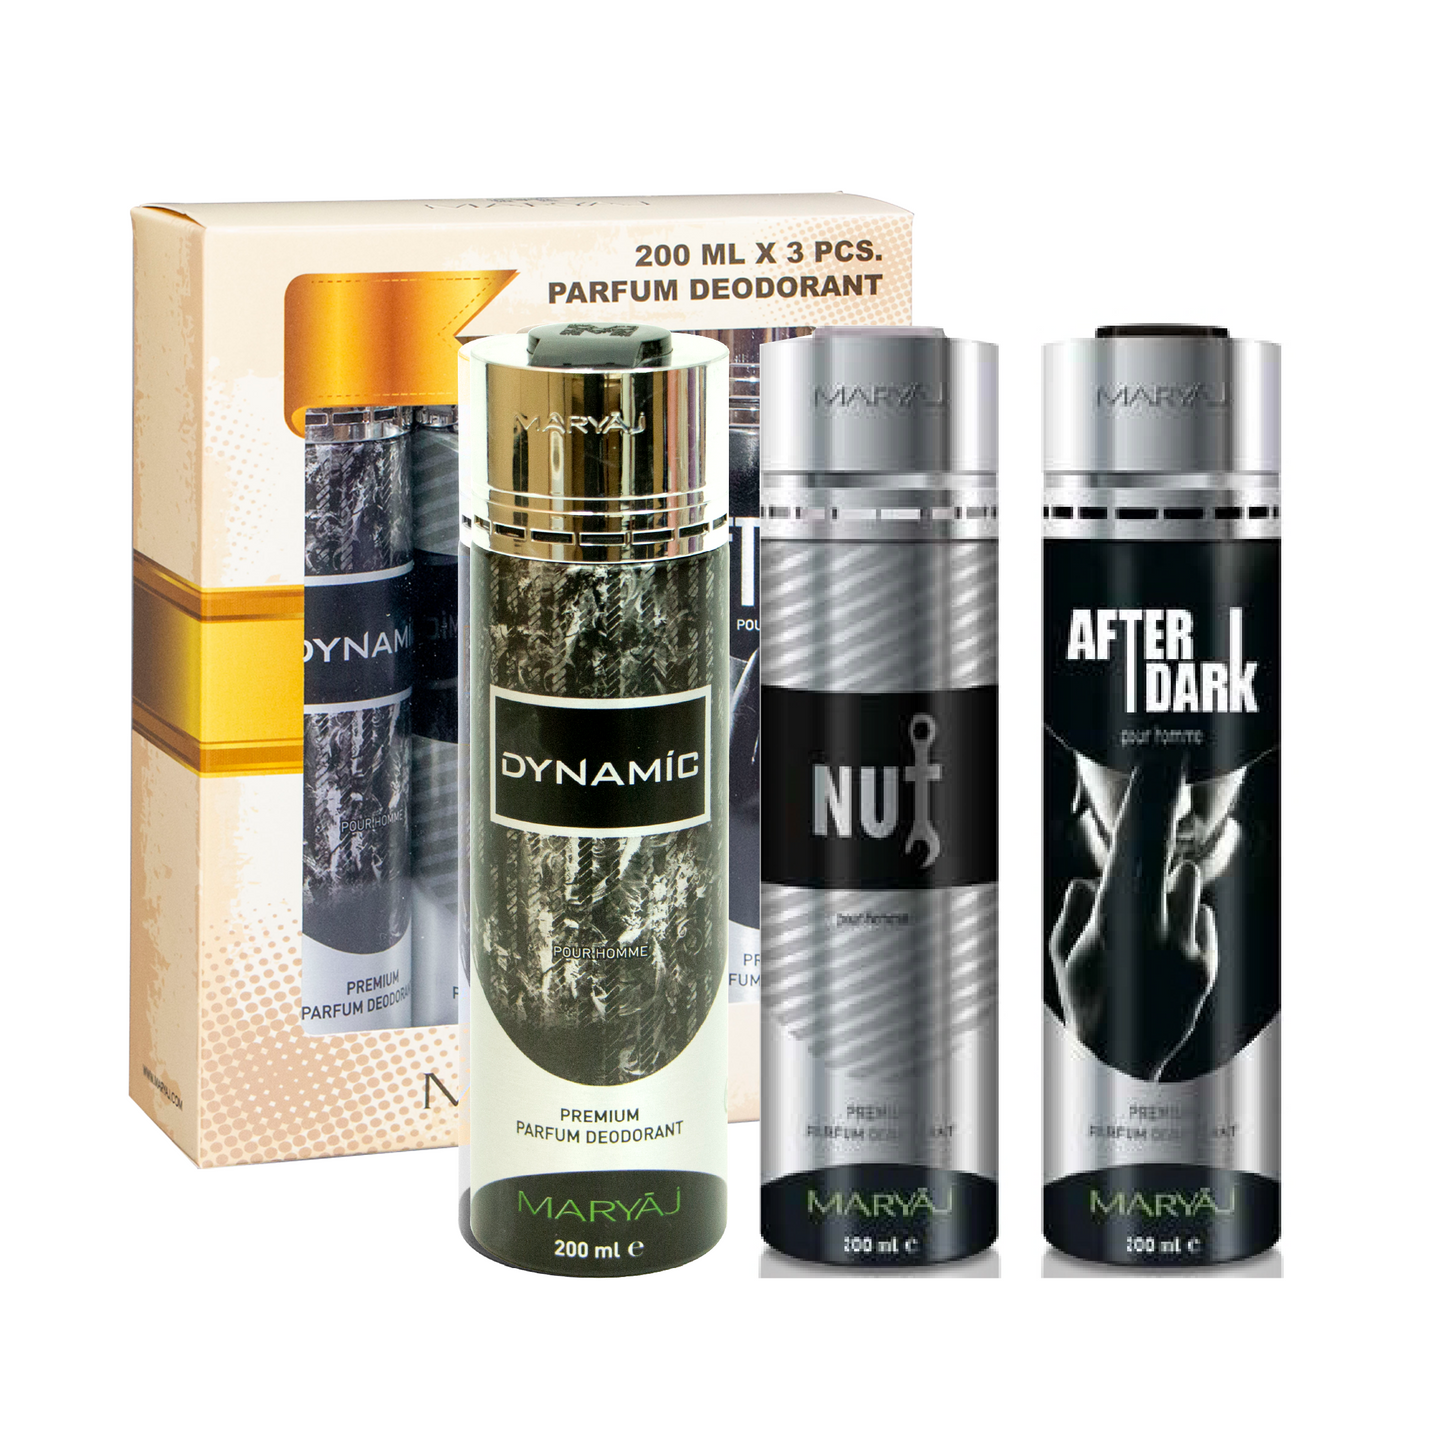 FRENCHLINE Deodorant Body Spray For Men, Pack of 3, (200ml Each)